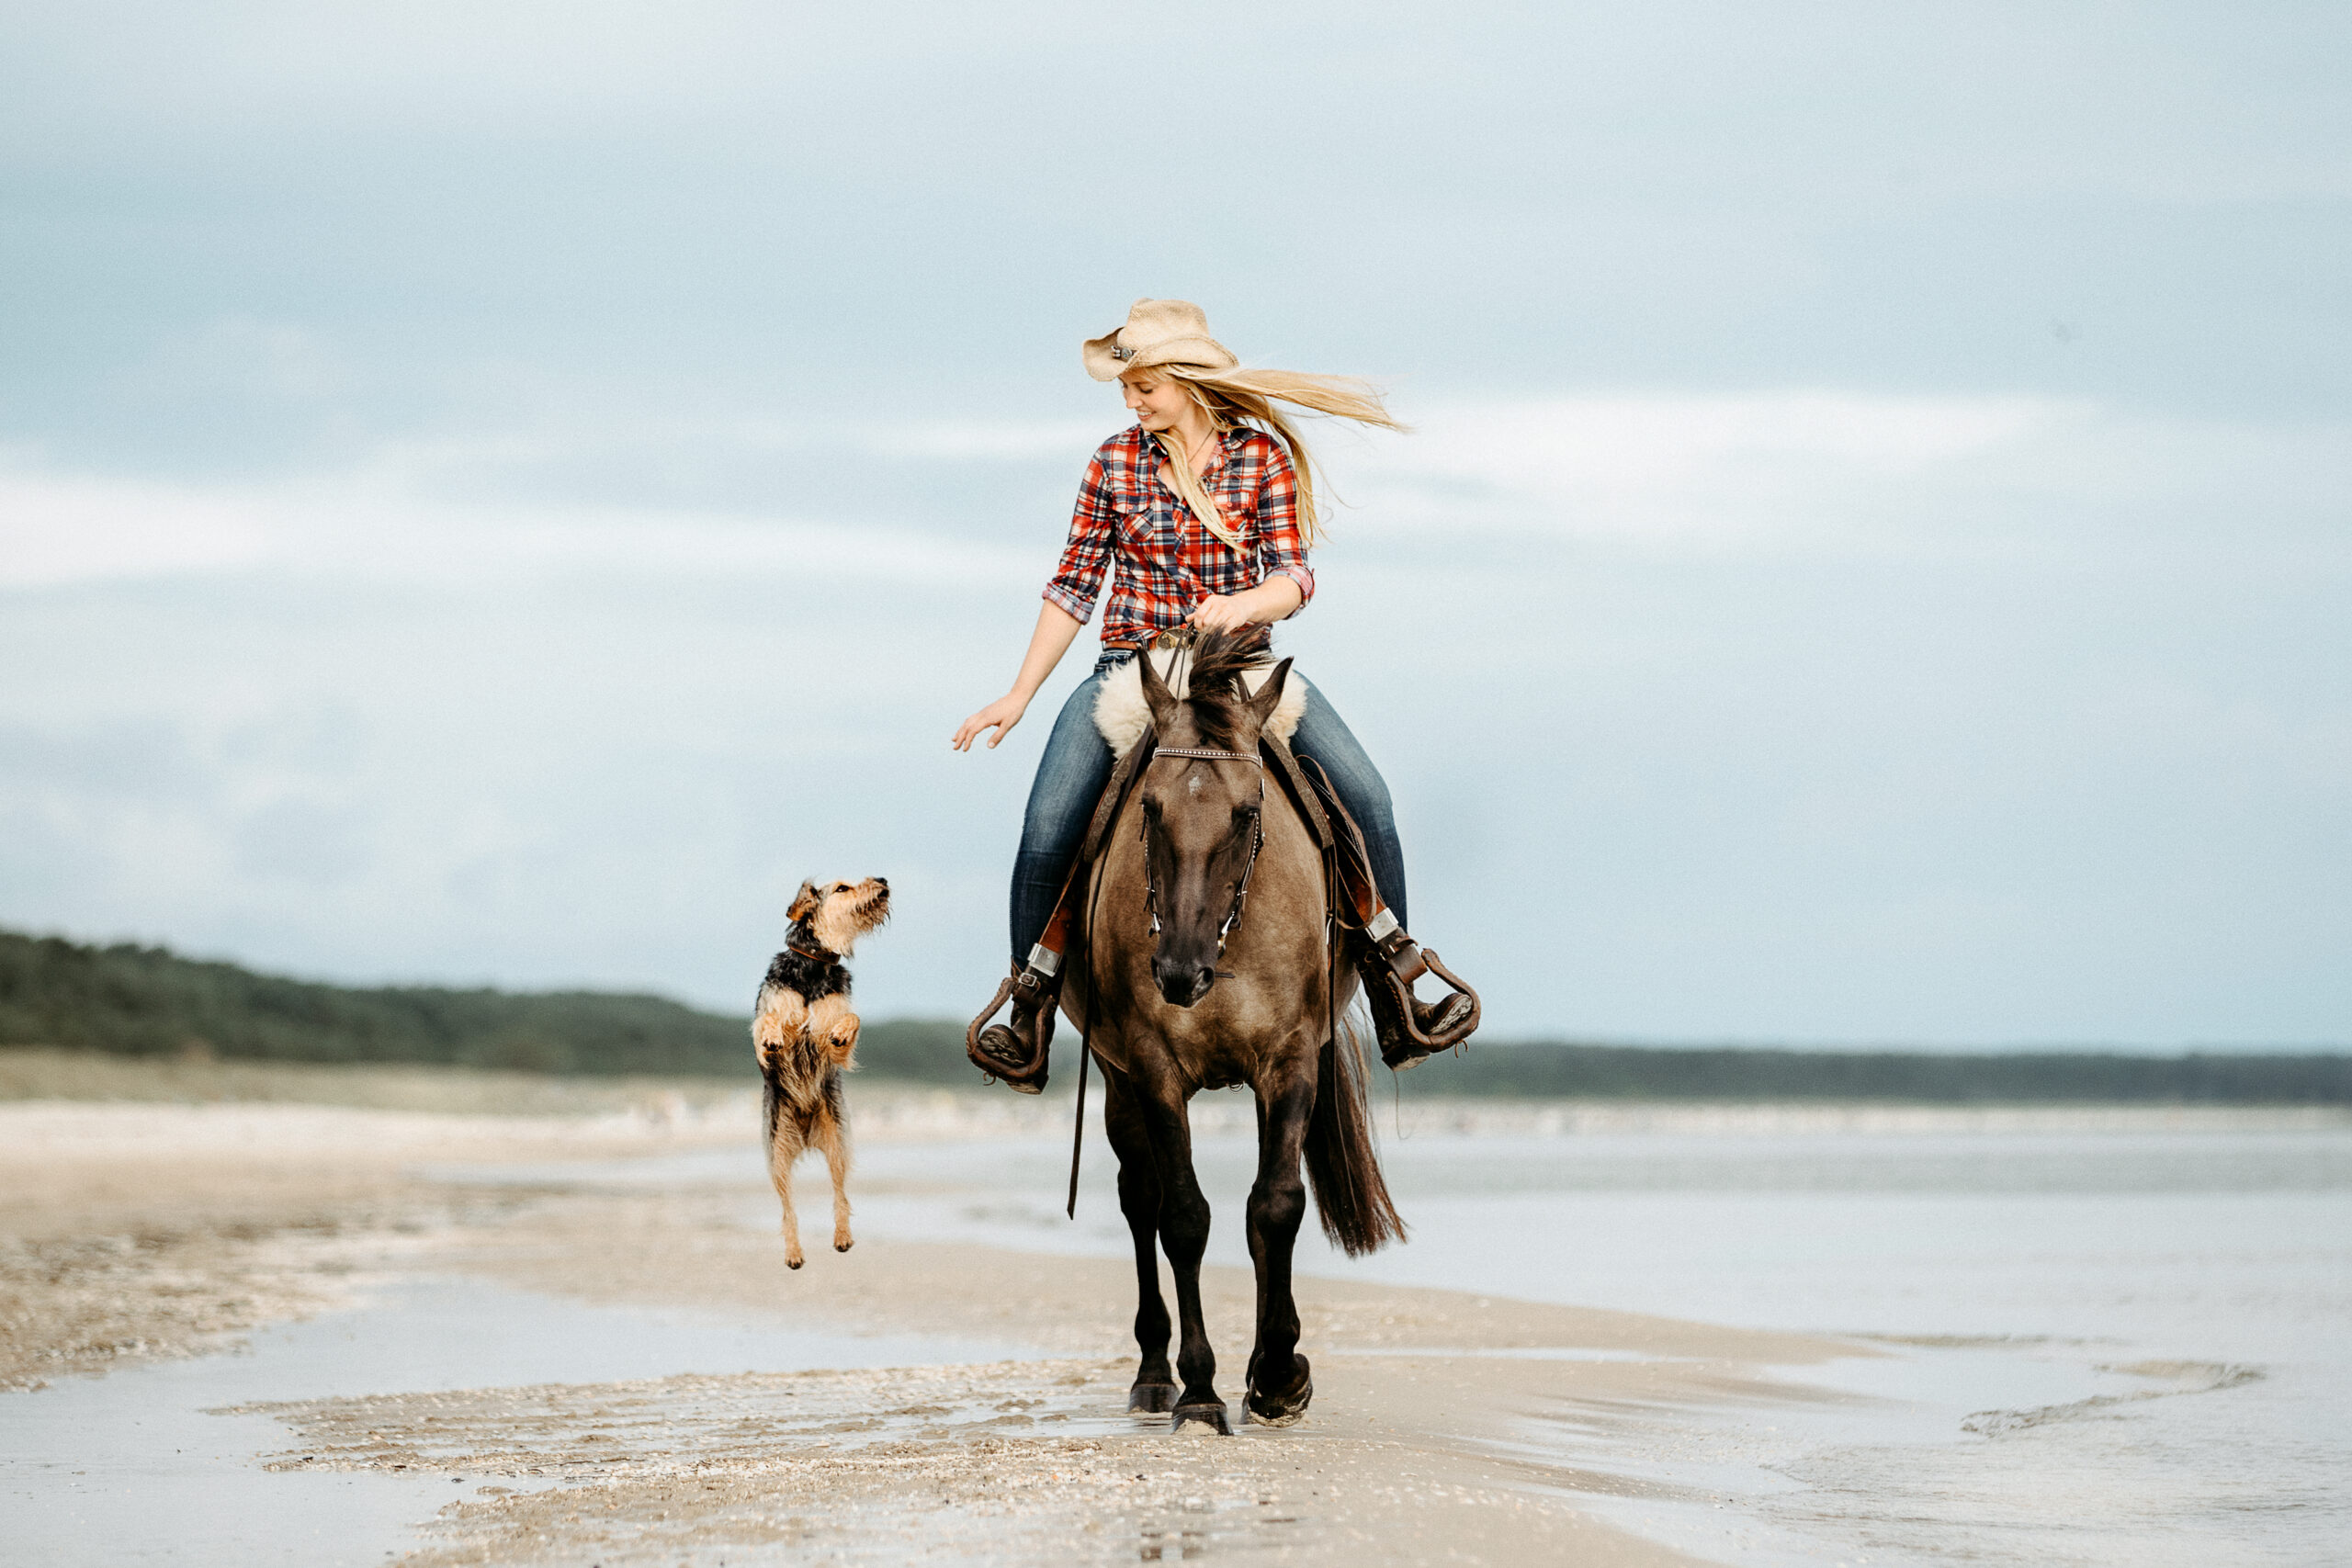 Pferd wird im Westernstil am Strand von Usedom geritten. Neben der Reiterin springt ein Hund freudig hoch.